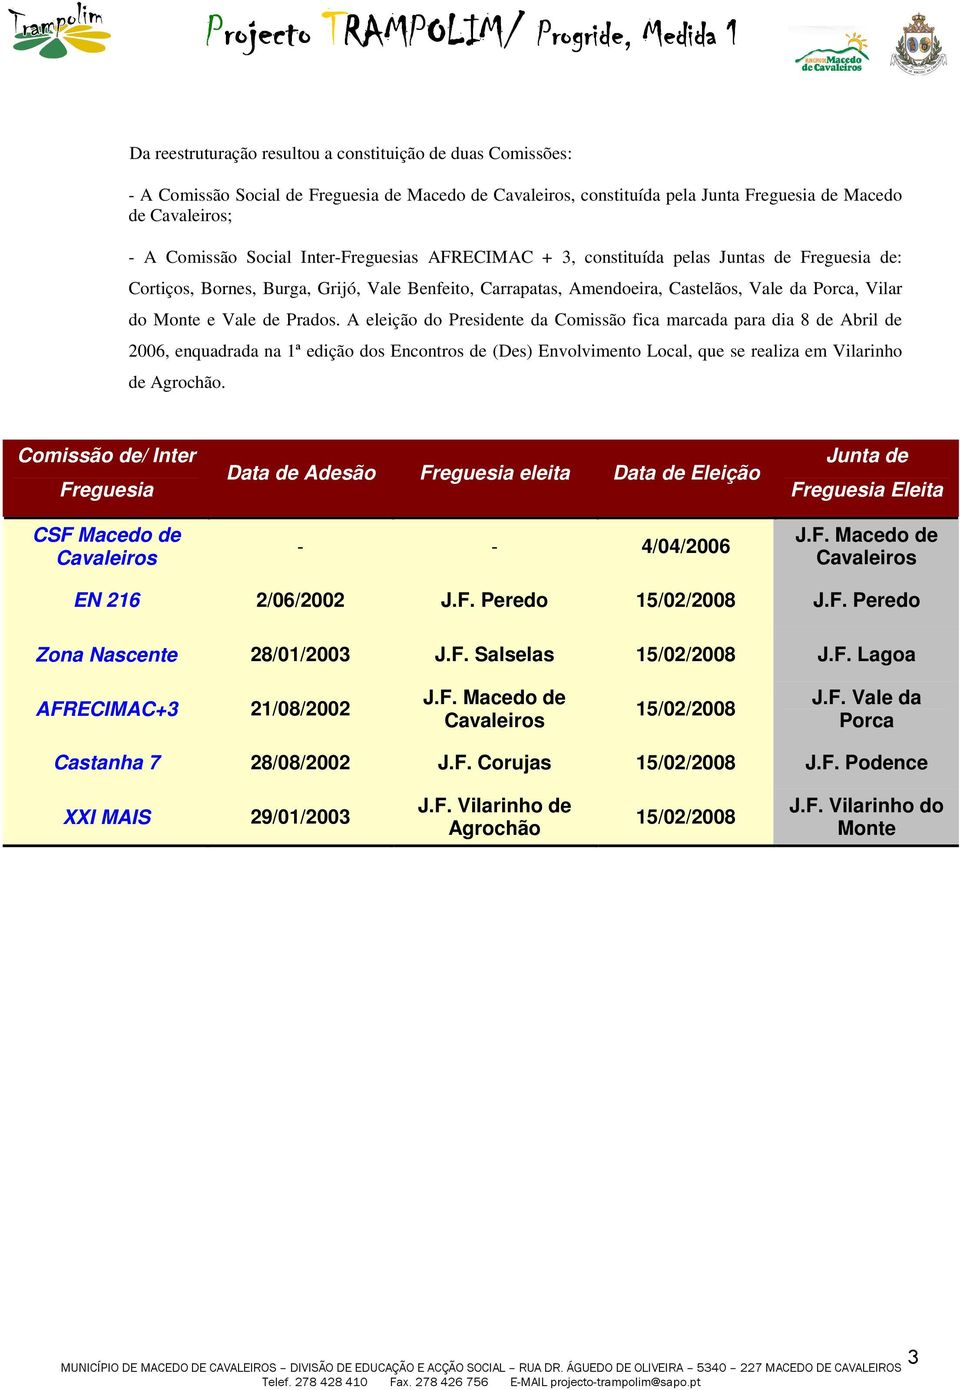 A eleição do Presidente da Comissão fica marcada para dia 8 de Abril de 2006, enquadrada na 1ª edição dos Encontros de (Des) Envolvimento Local, que se realiza em Vilarinho de Agrochão.